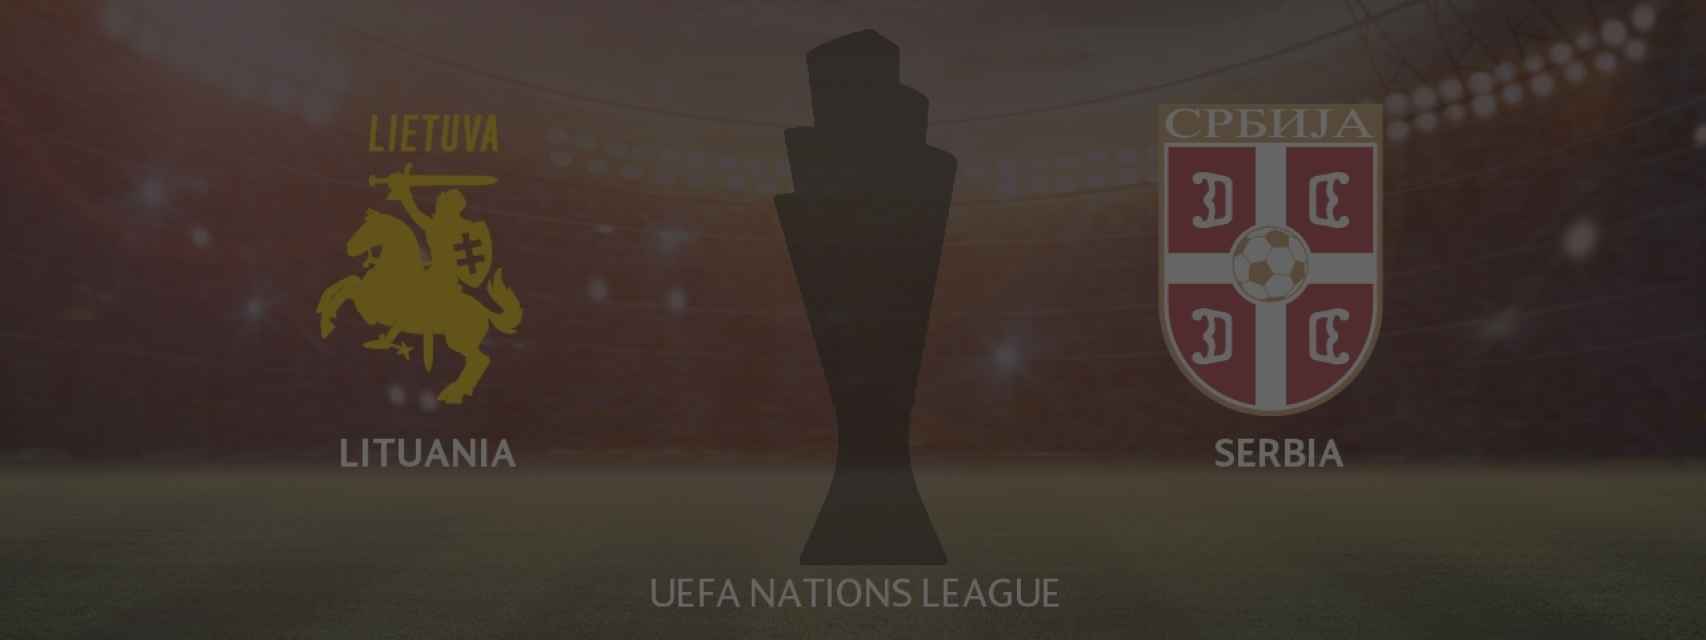 Lituania - Serbia, UEFA Nations League